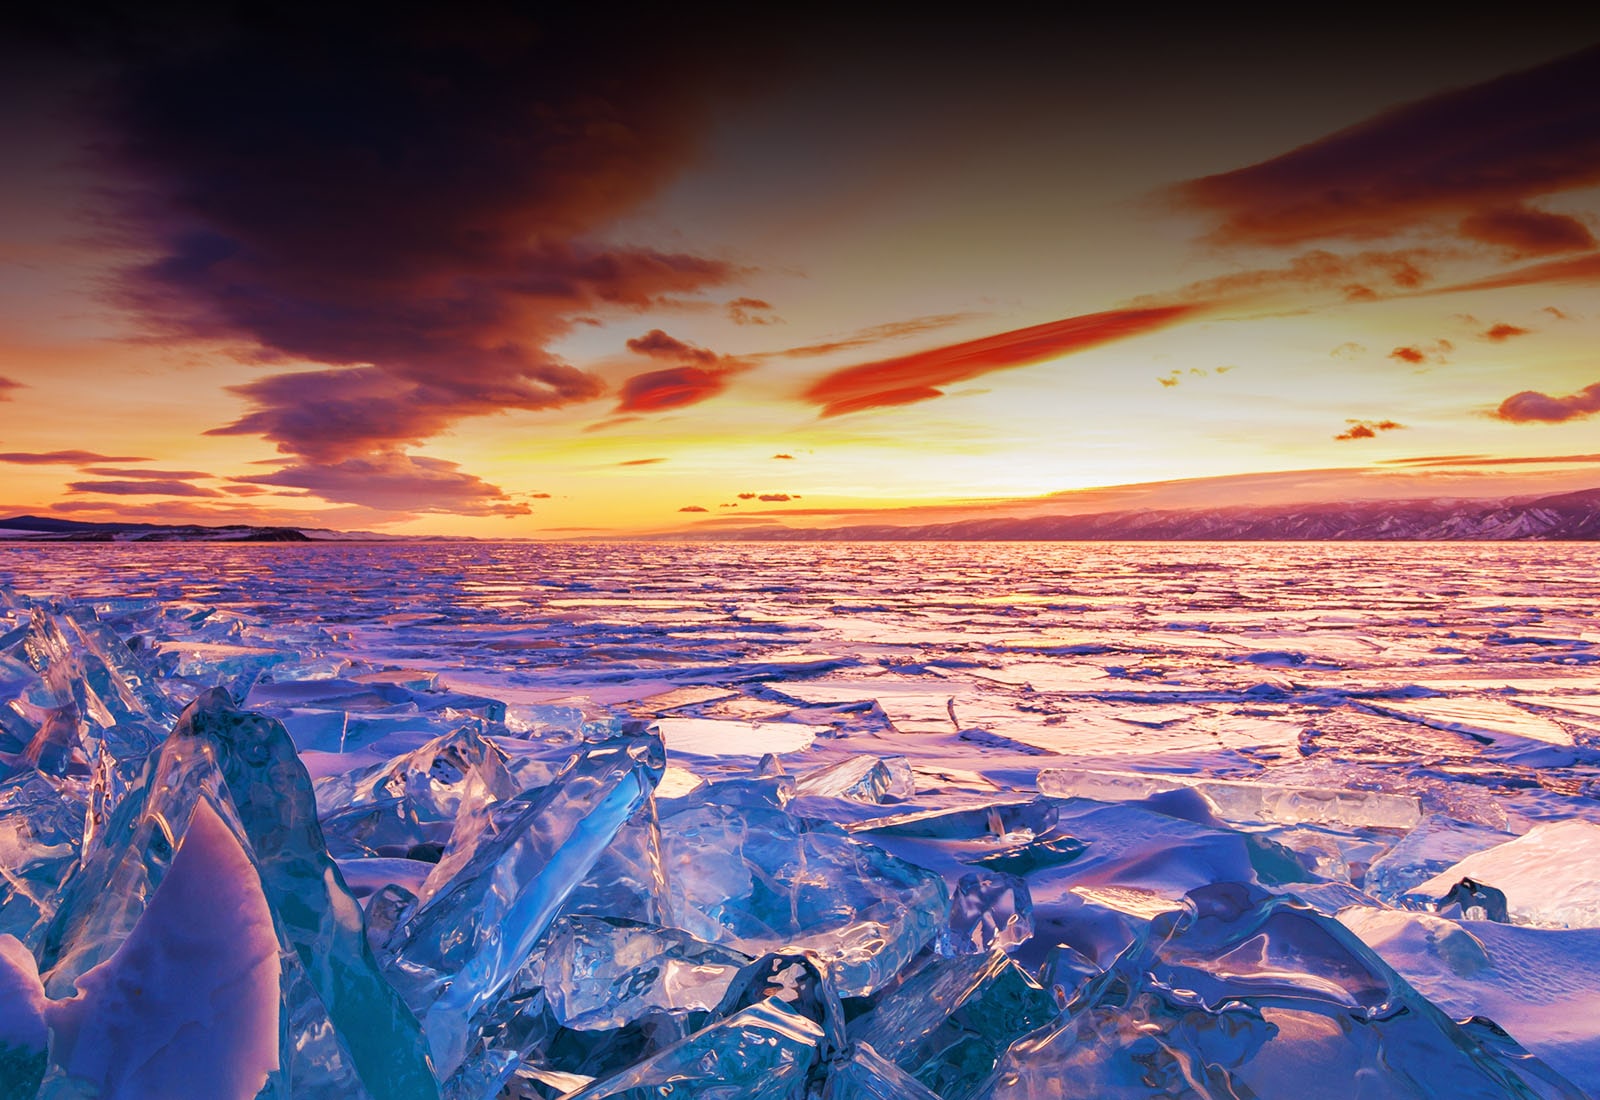 Živopisan prikaz zalaska sunca i ledenjaka.